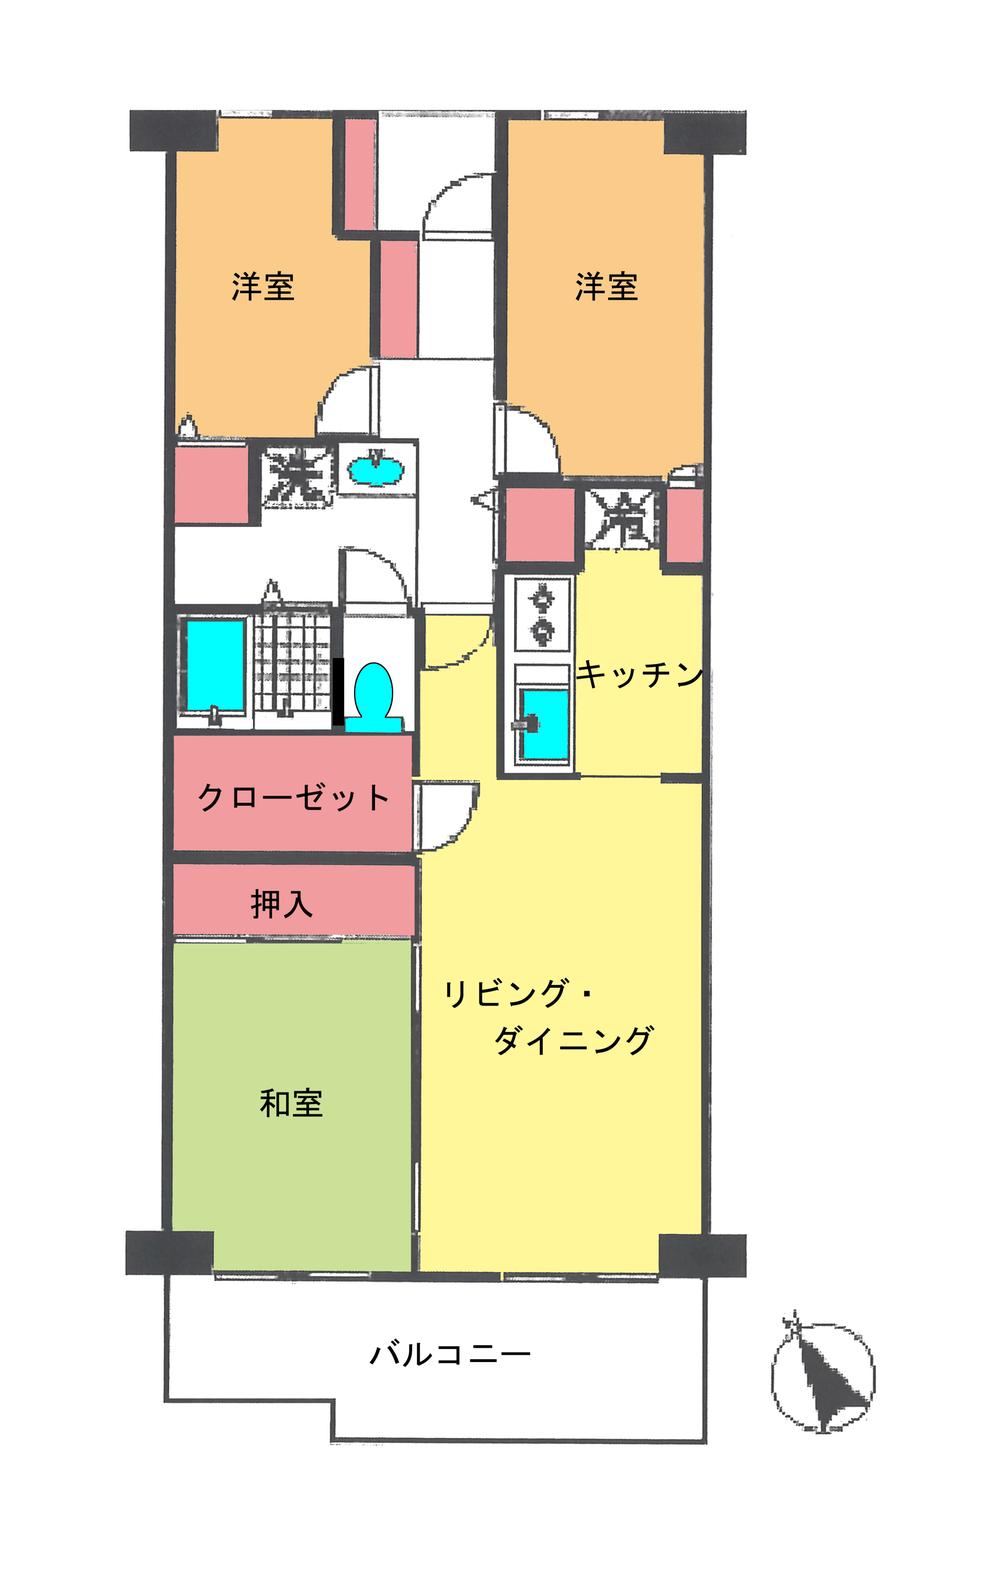 Floor plan. 3LDK + S (storeroom), Price 9.8 million yen, Occupied area 68.81 sq m , Balcony area 9.5 sq m floor plan